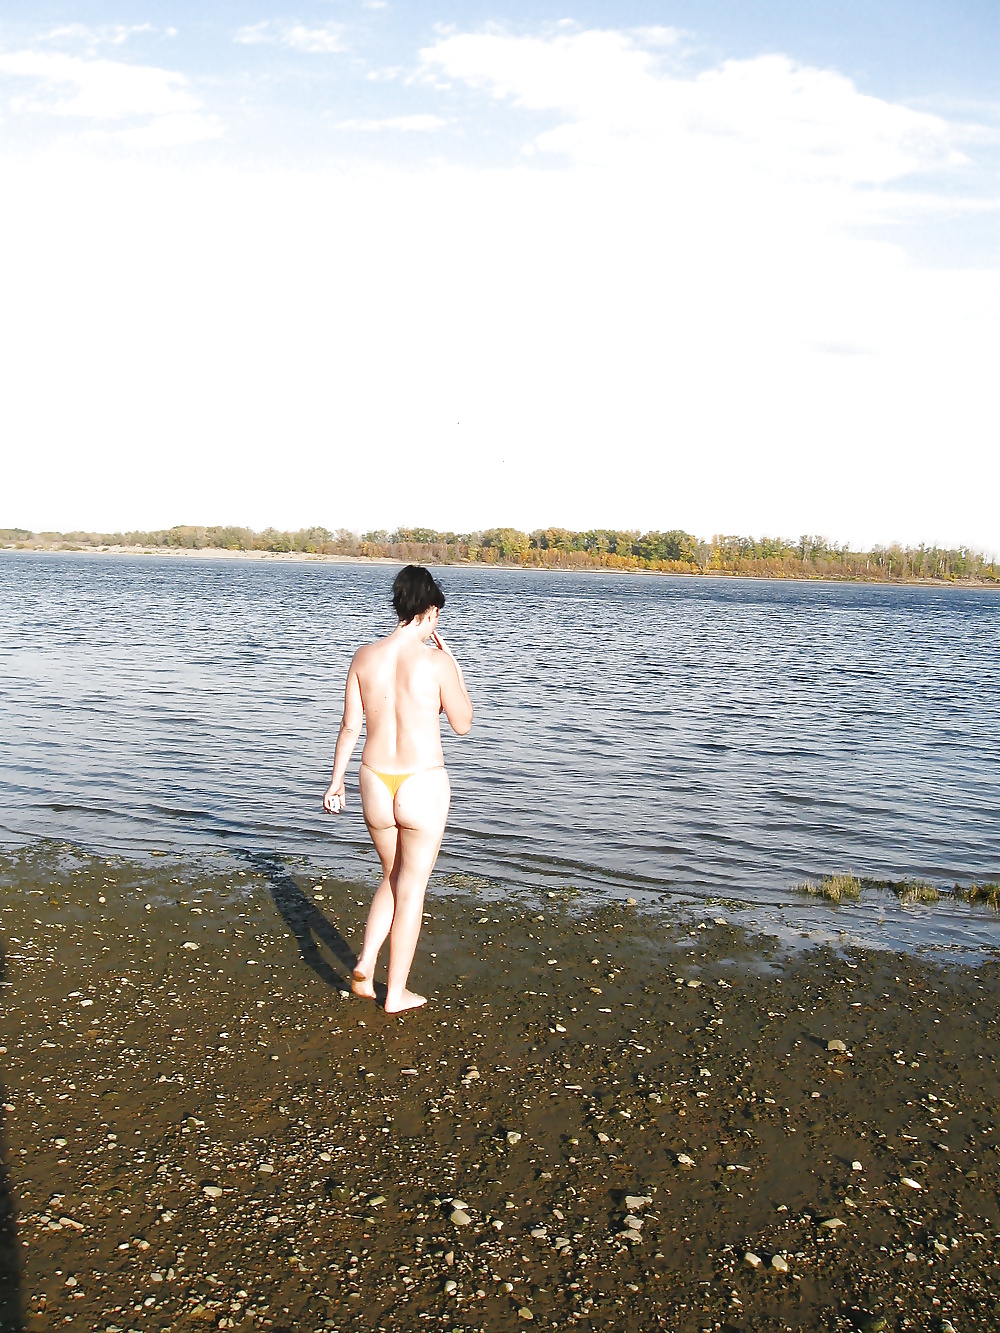 Lili sulla spiaggia in topless con mutandine gialle
 #29389020